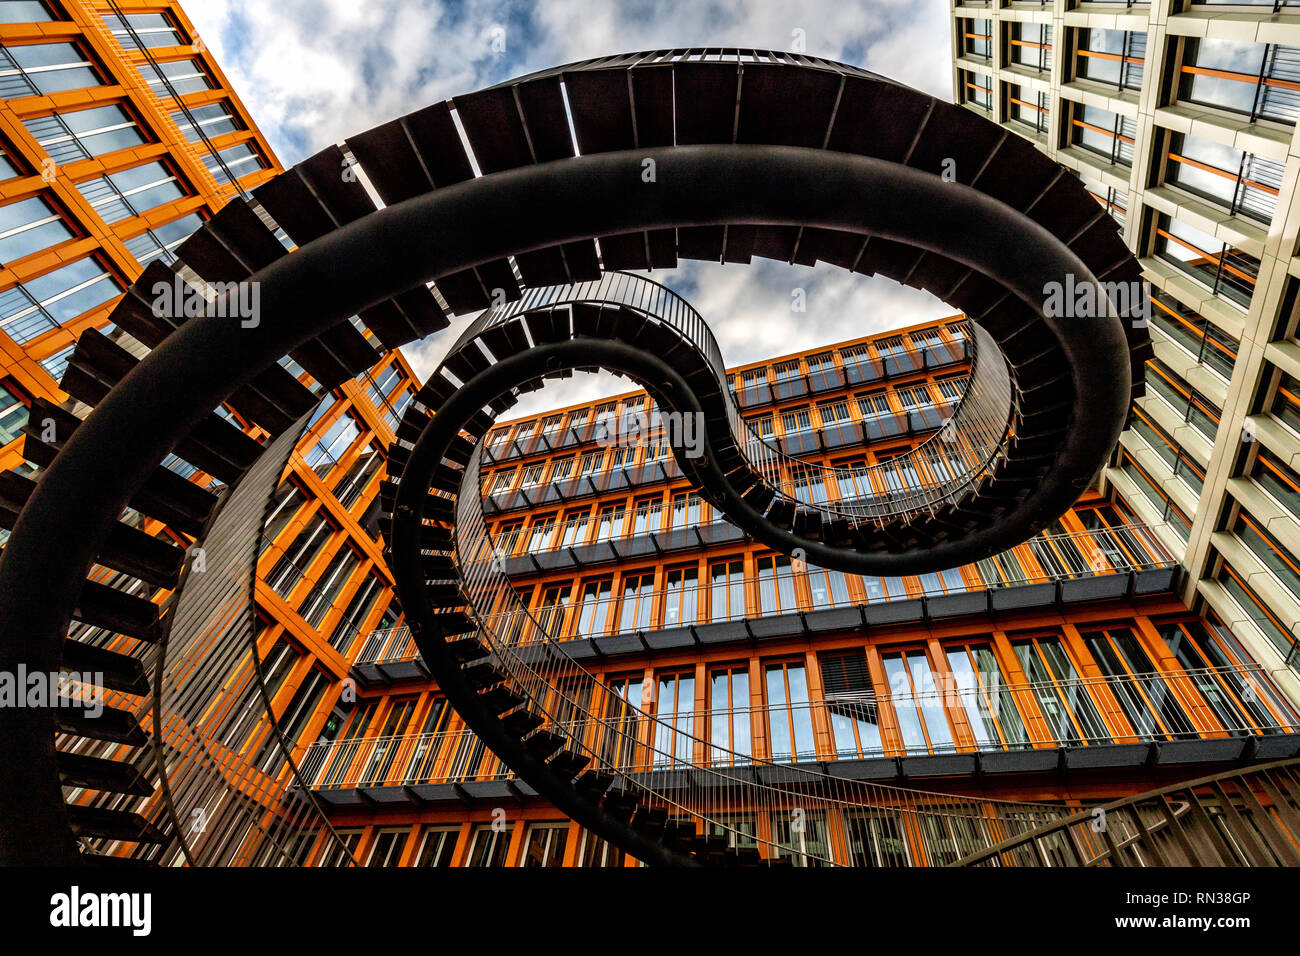 L'infini (escalier escalier sans fin) , double helix, la sculpture, l'artiste Olafur Eliasson, société d'audit KPMG, Westend, Schwantalerhöhe, Munich Banque D'Images